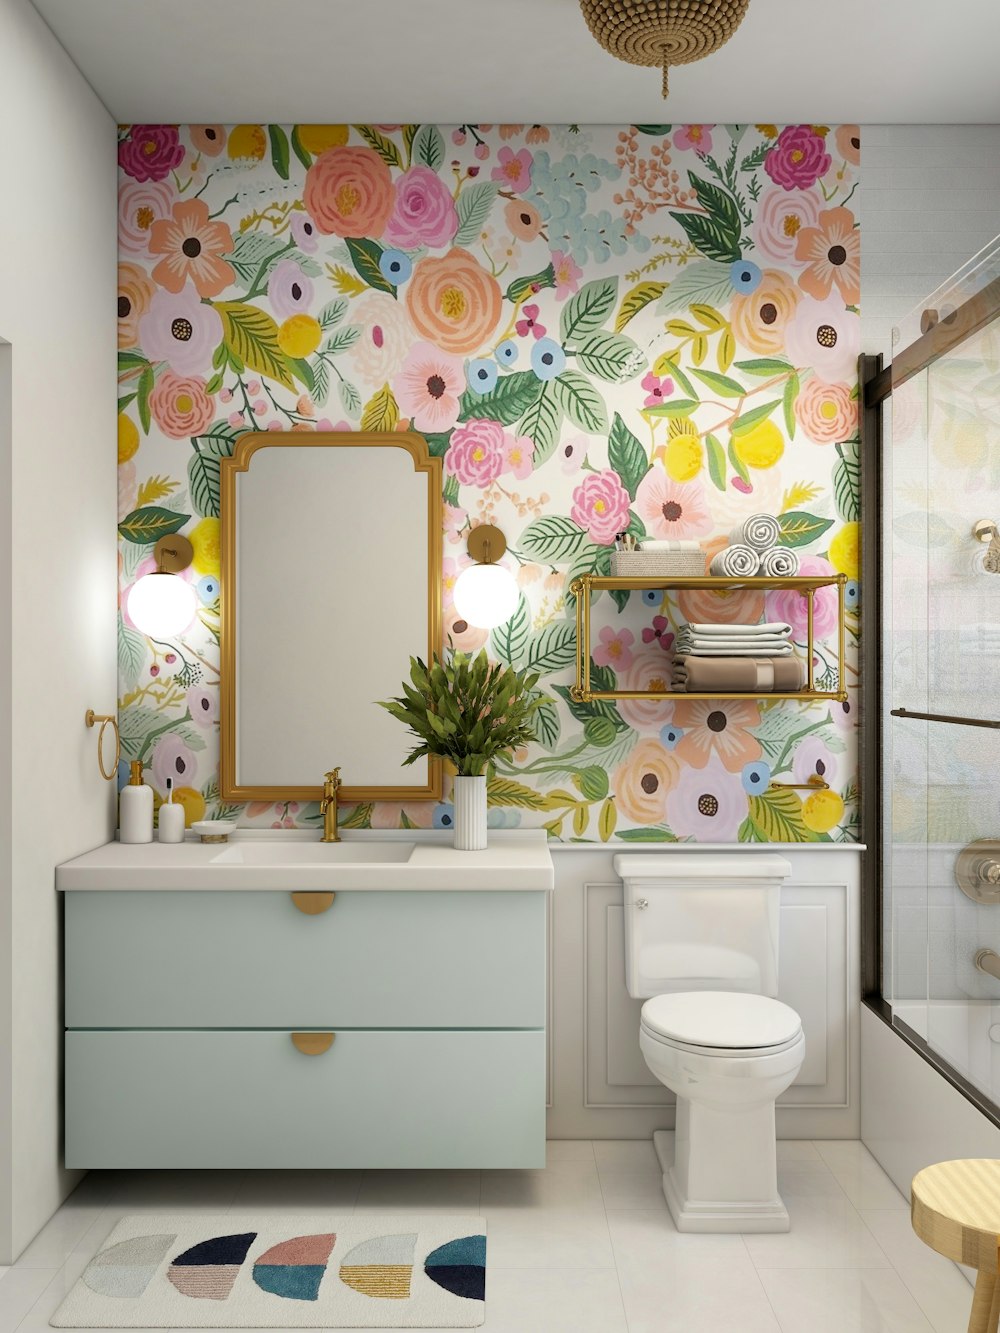 꽃 벽지와 흰색 화장실이있는 욕실